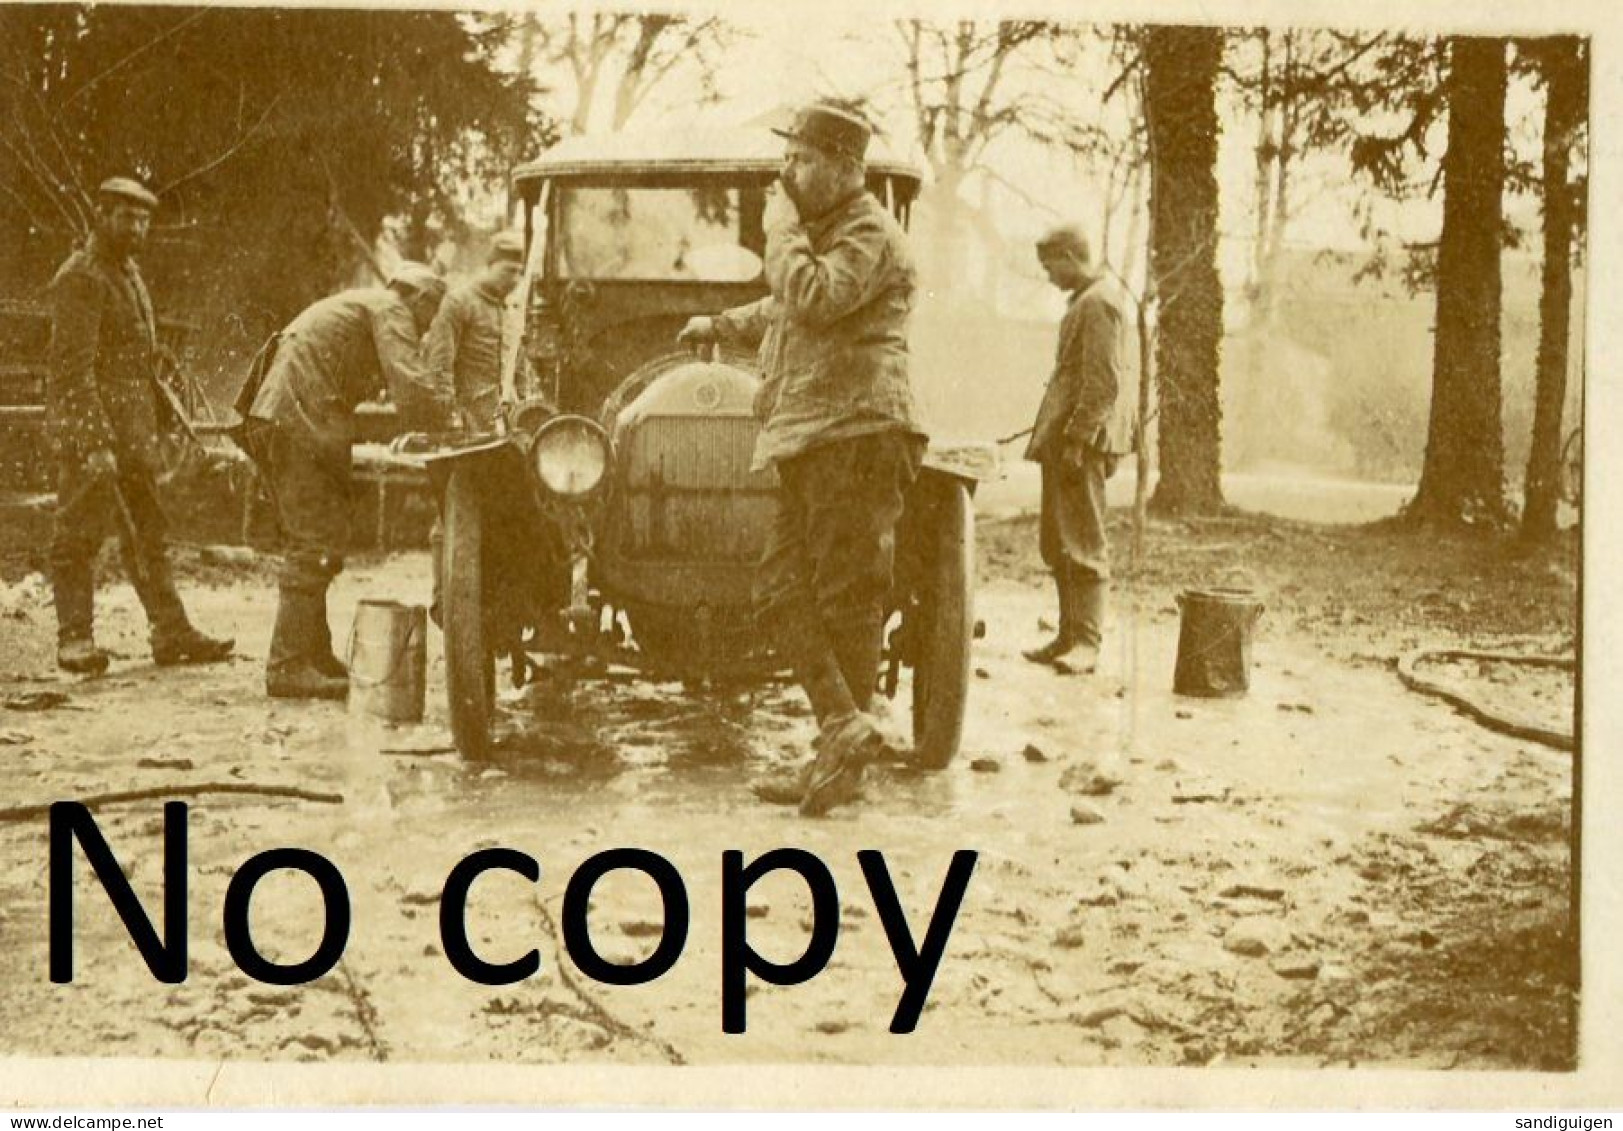 PHOTO FRANCAISE - NETTOYAGE DE L'AUTOMOBILE PAR LES PRISONNIERS A LEMMES PRES DE SOUILLY - VERDUN MEUSE GUERRE 1914 1918 - Krieg, Militär